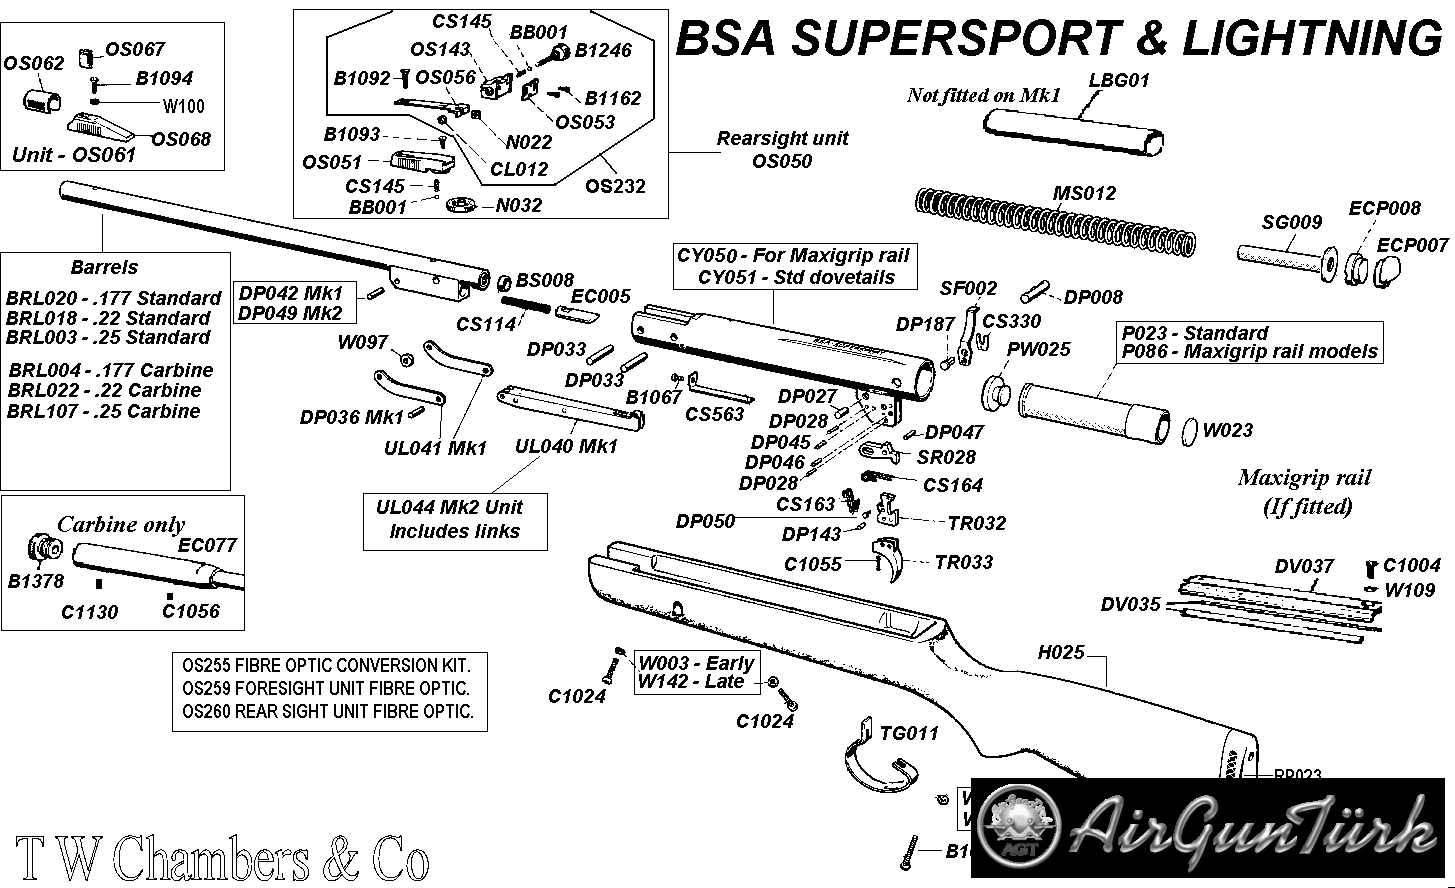 BSA SuperSport Şema ve Ayrıntıları